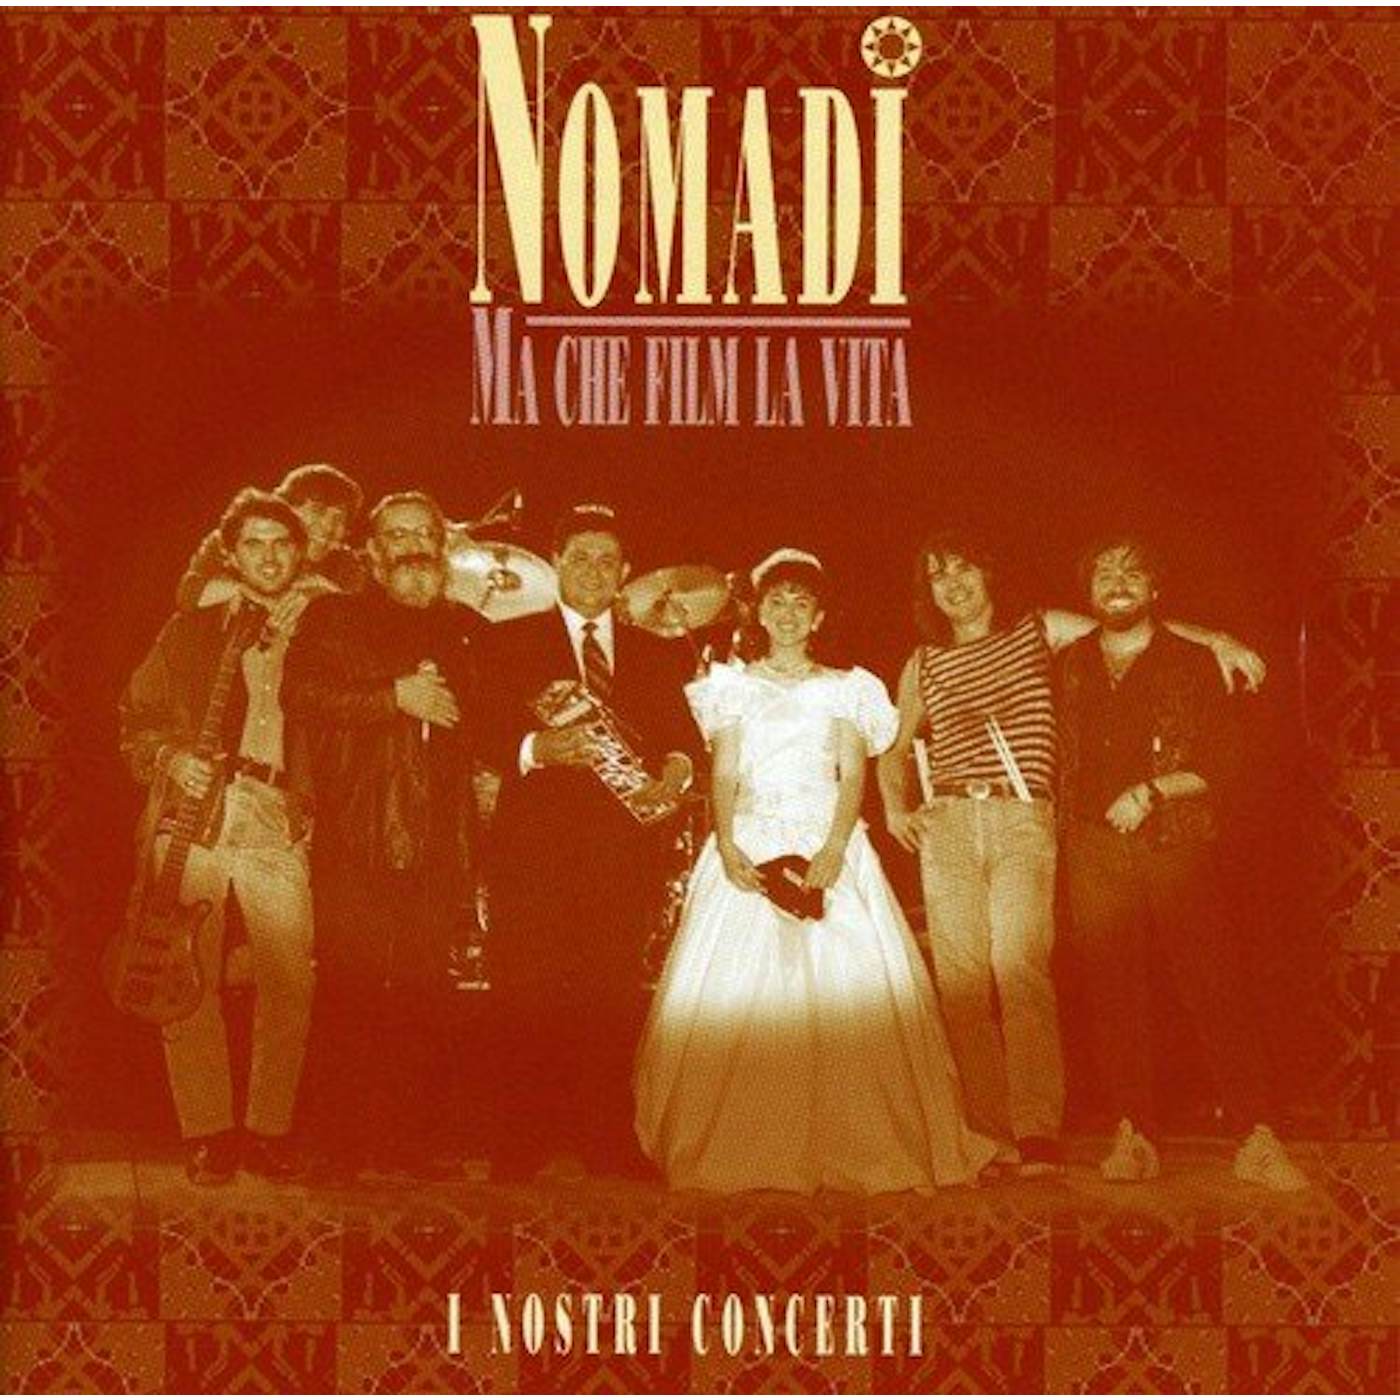 Nomadi MA CHE FILM LA VITA LIVE: I NOSTRI CONCERTI Vinyl Record